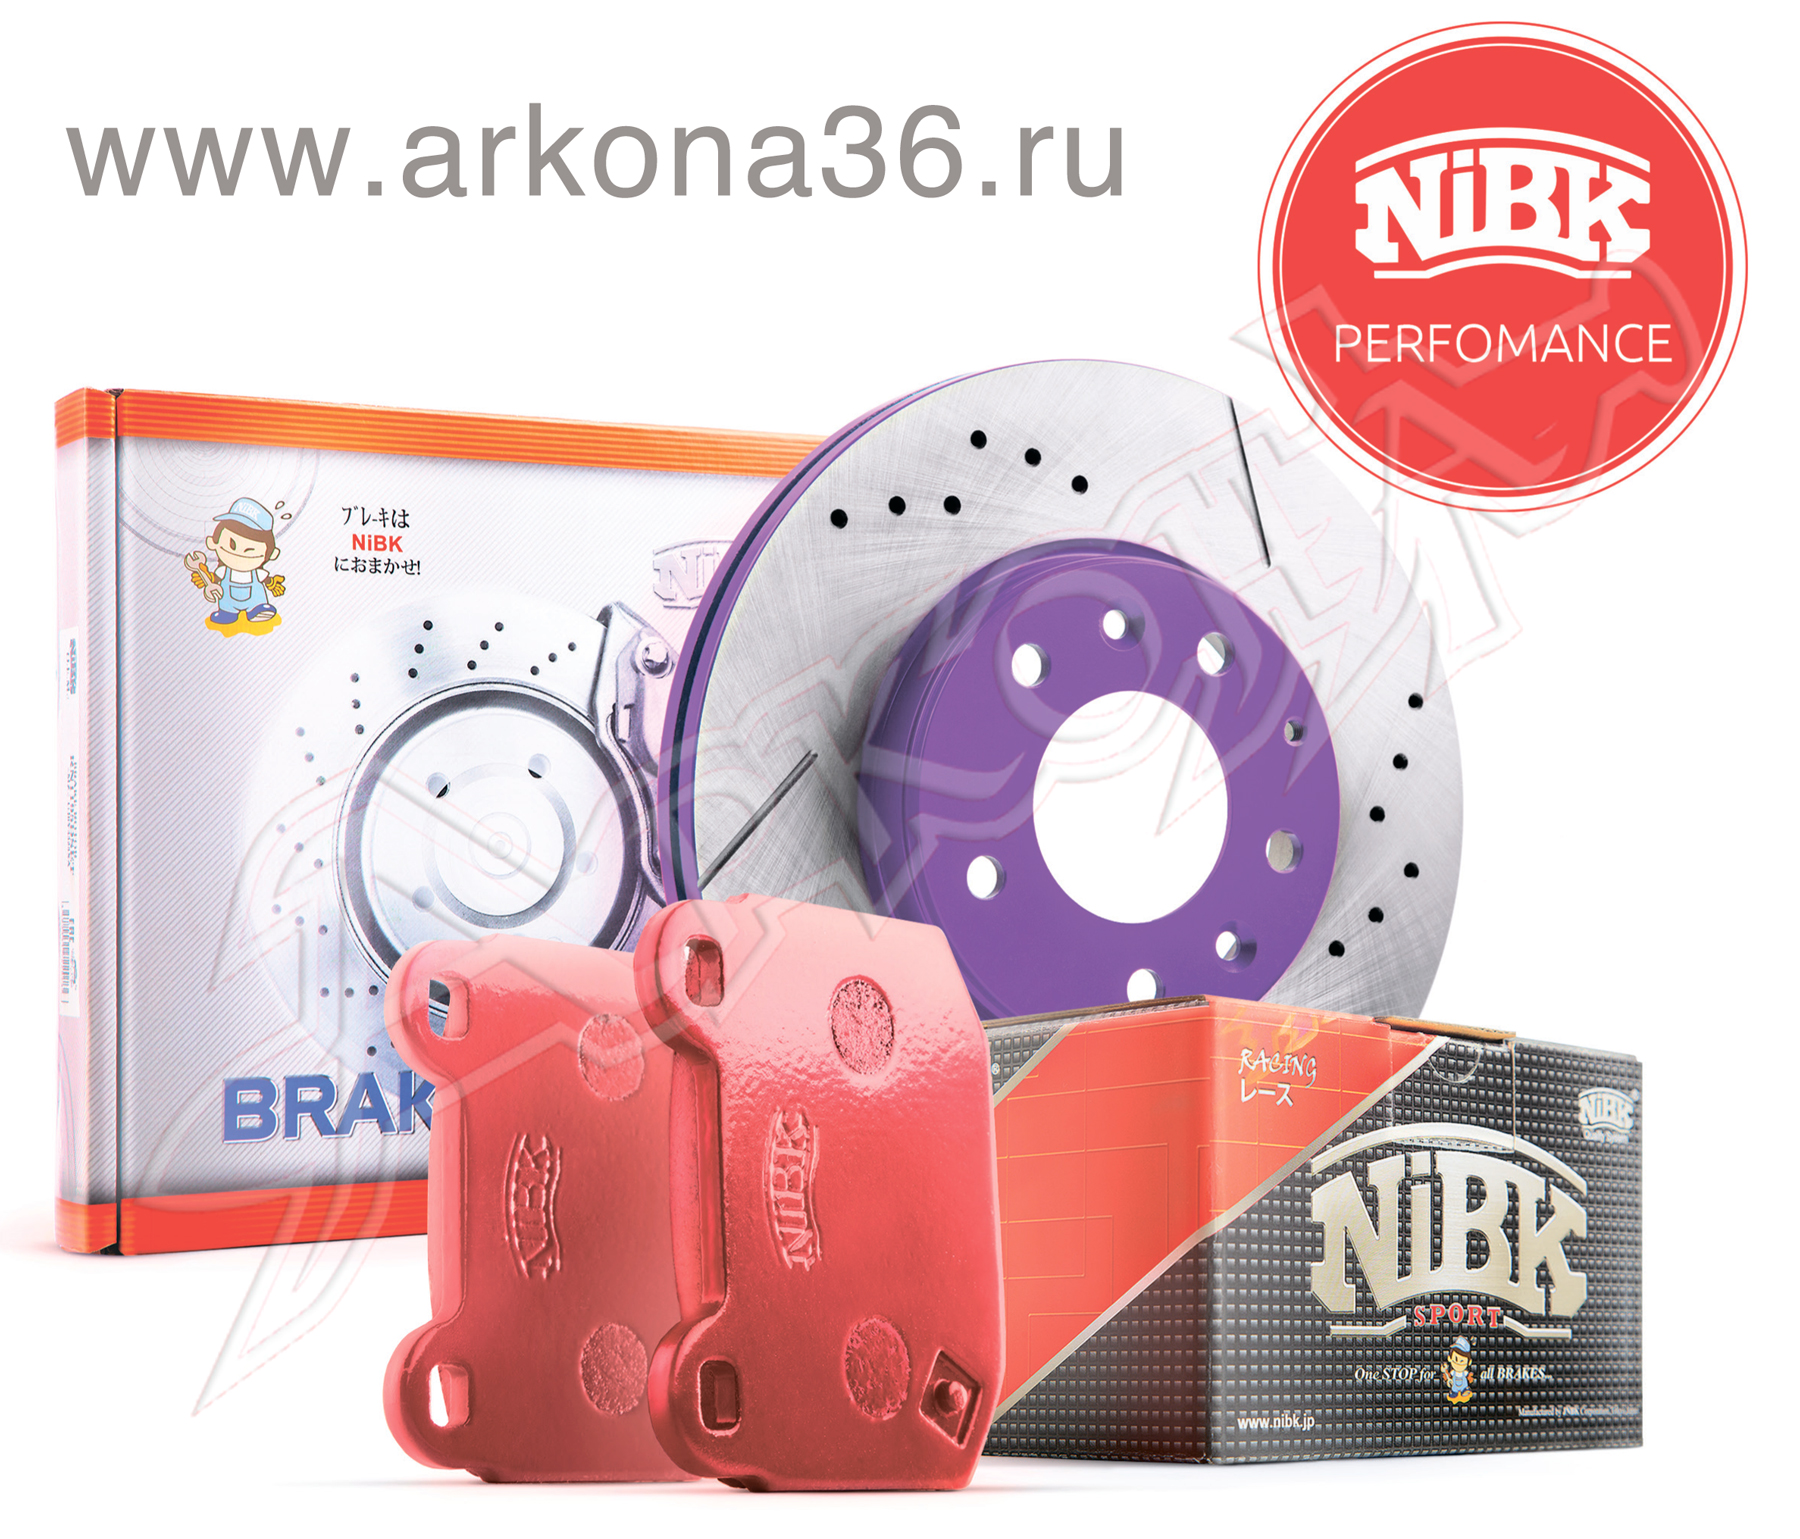 PERFORMANCE NiBK расширенная пожизненная гарантия тормозных колодок дисков Нибк дистрибьютор купить оптом arkona36